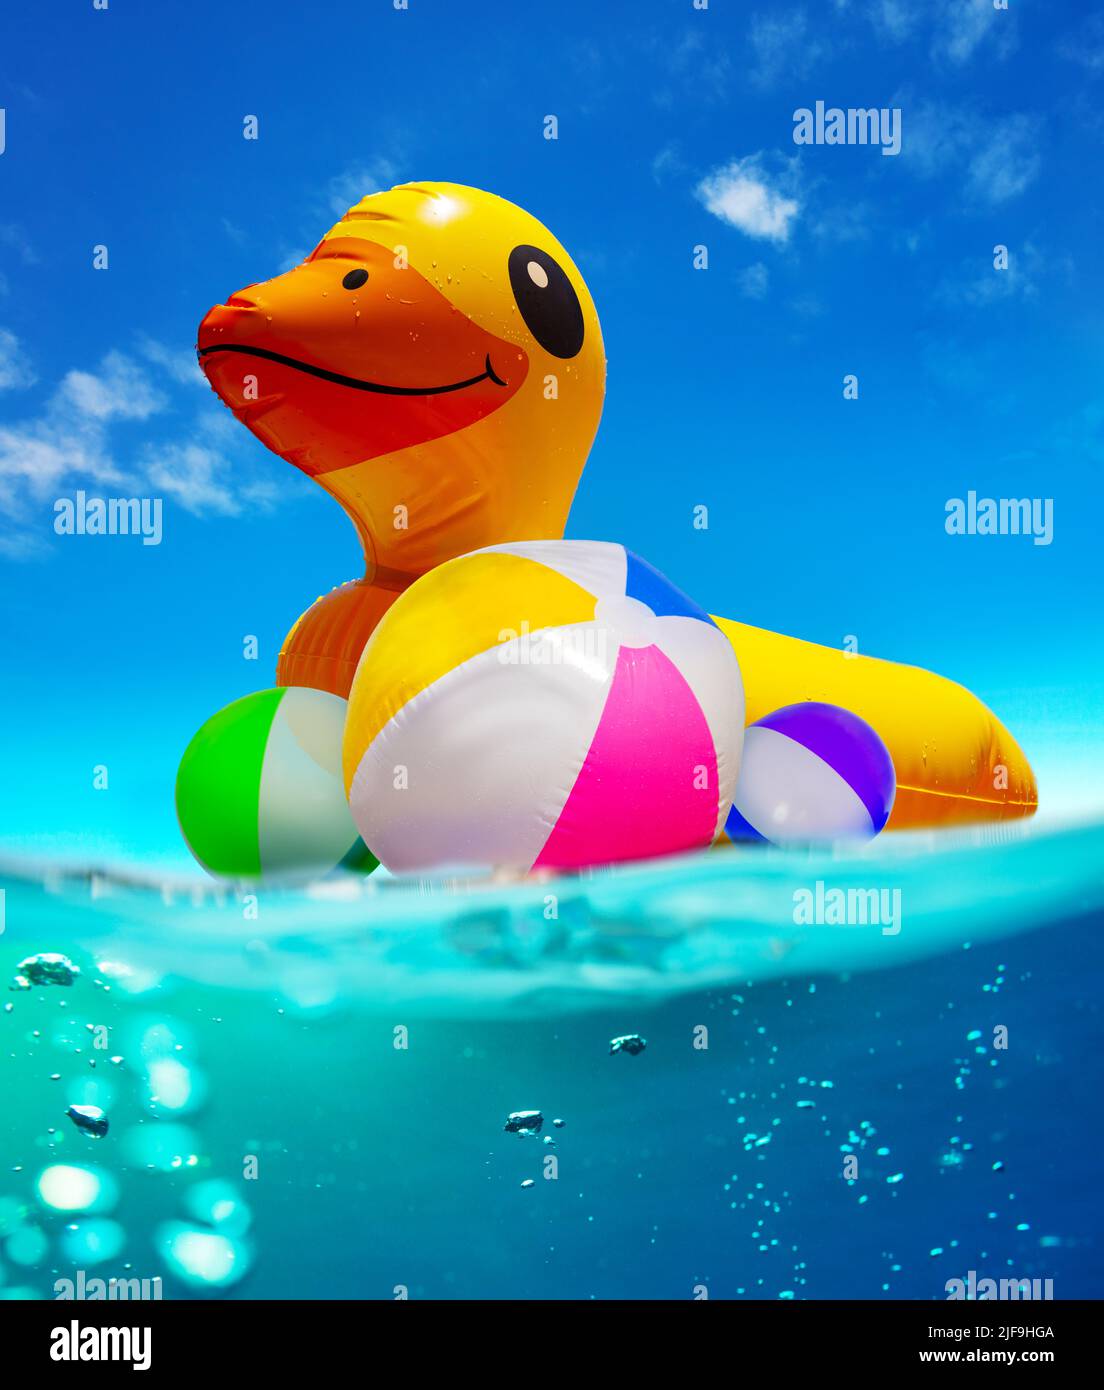 Canard gonflable nagez dans l'eau avec des boules de couleur split shoot Banque D'Images